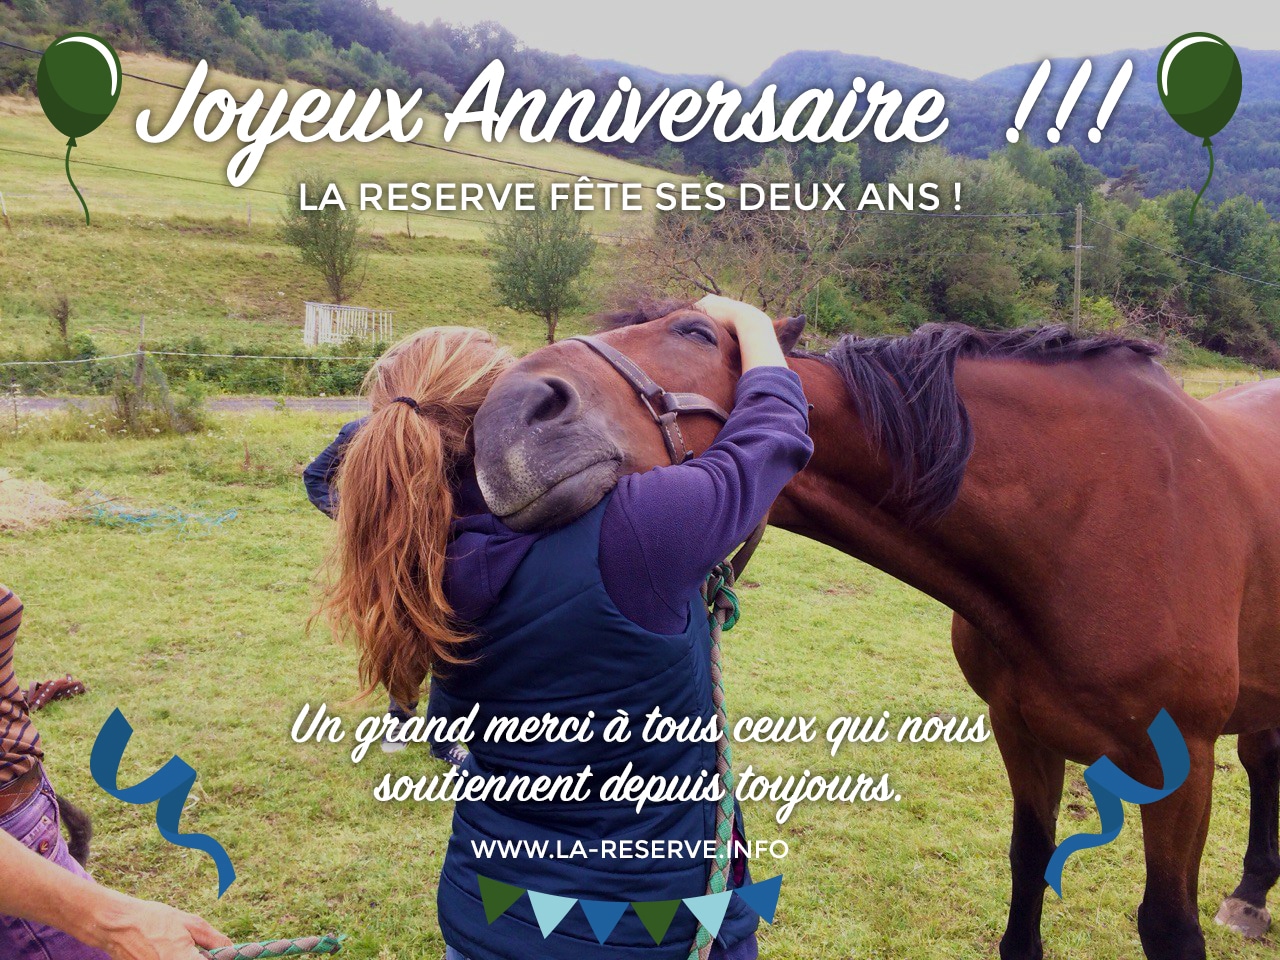 #ANNIVERSAIRE – L’association la Réserve fête ses deux ans d’existence !